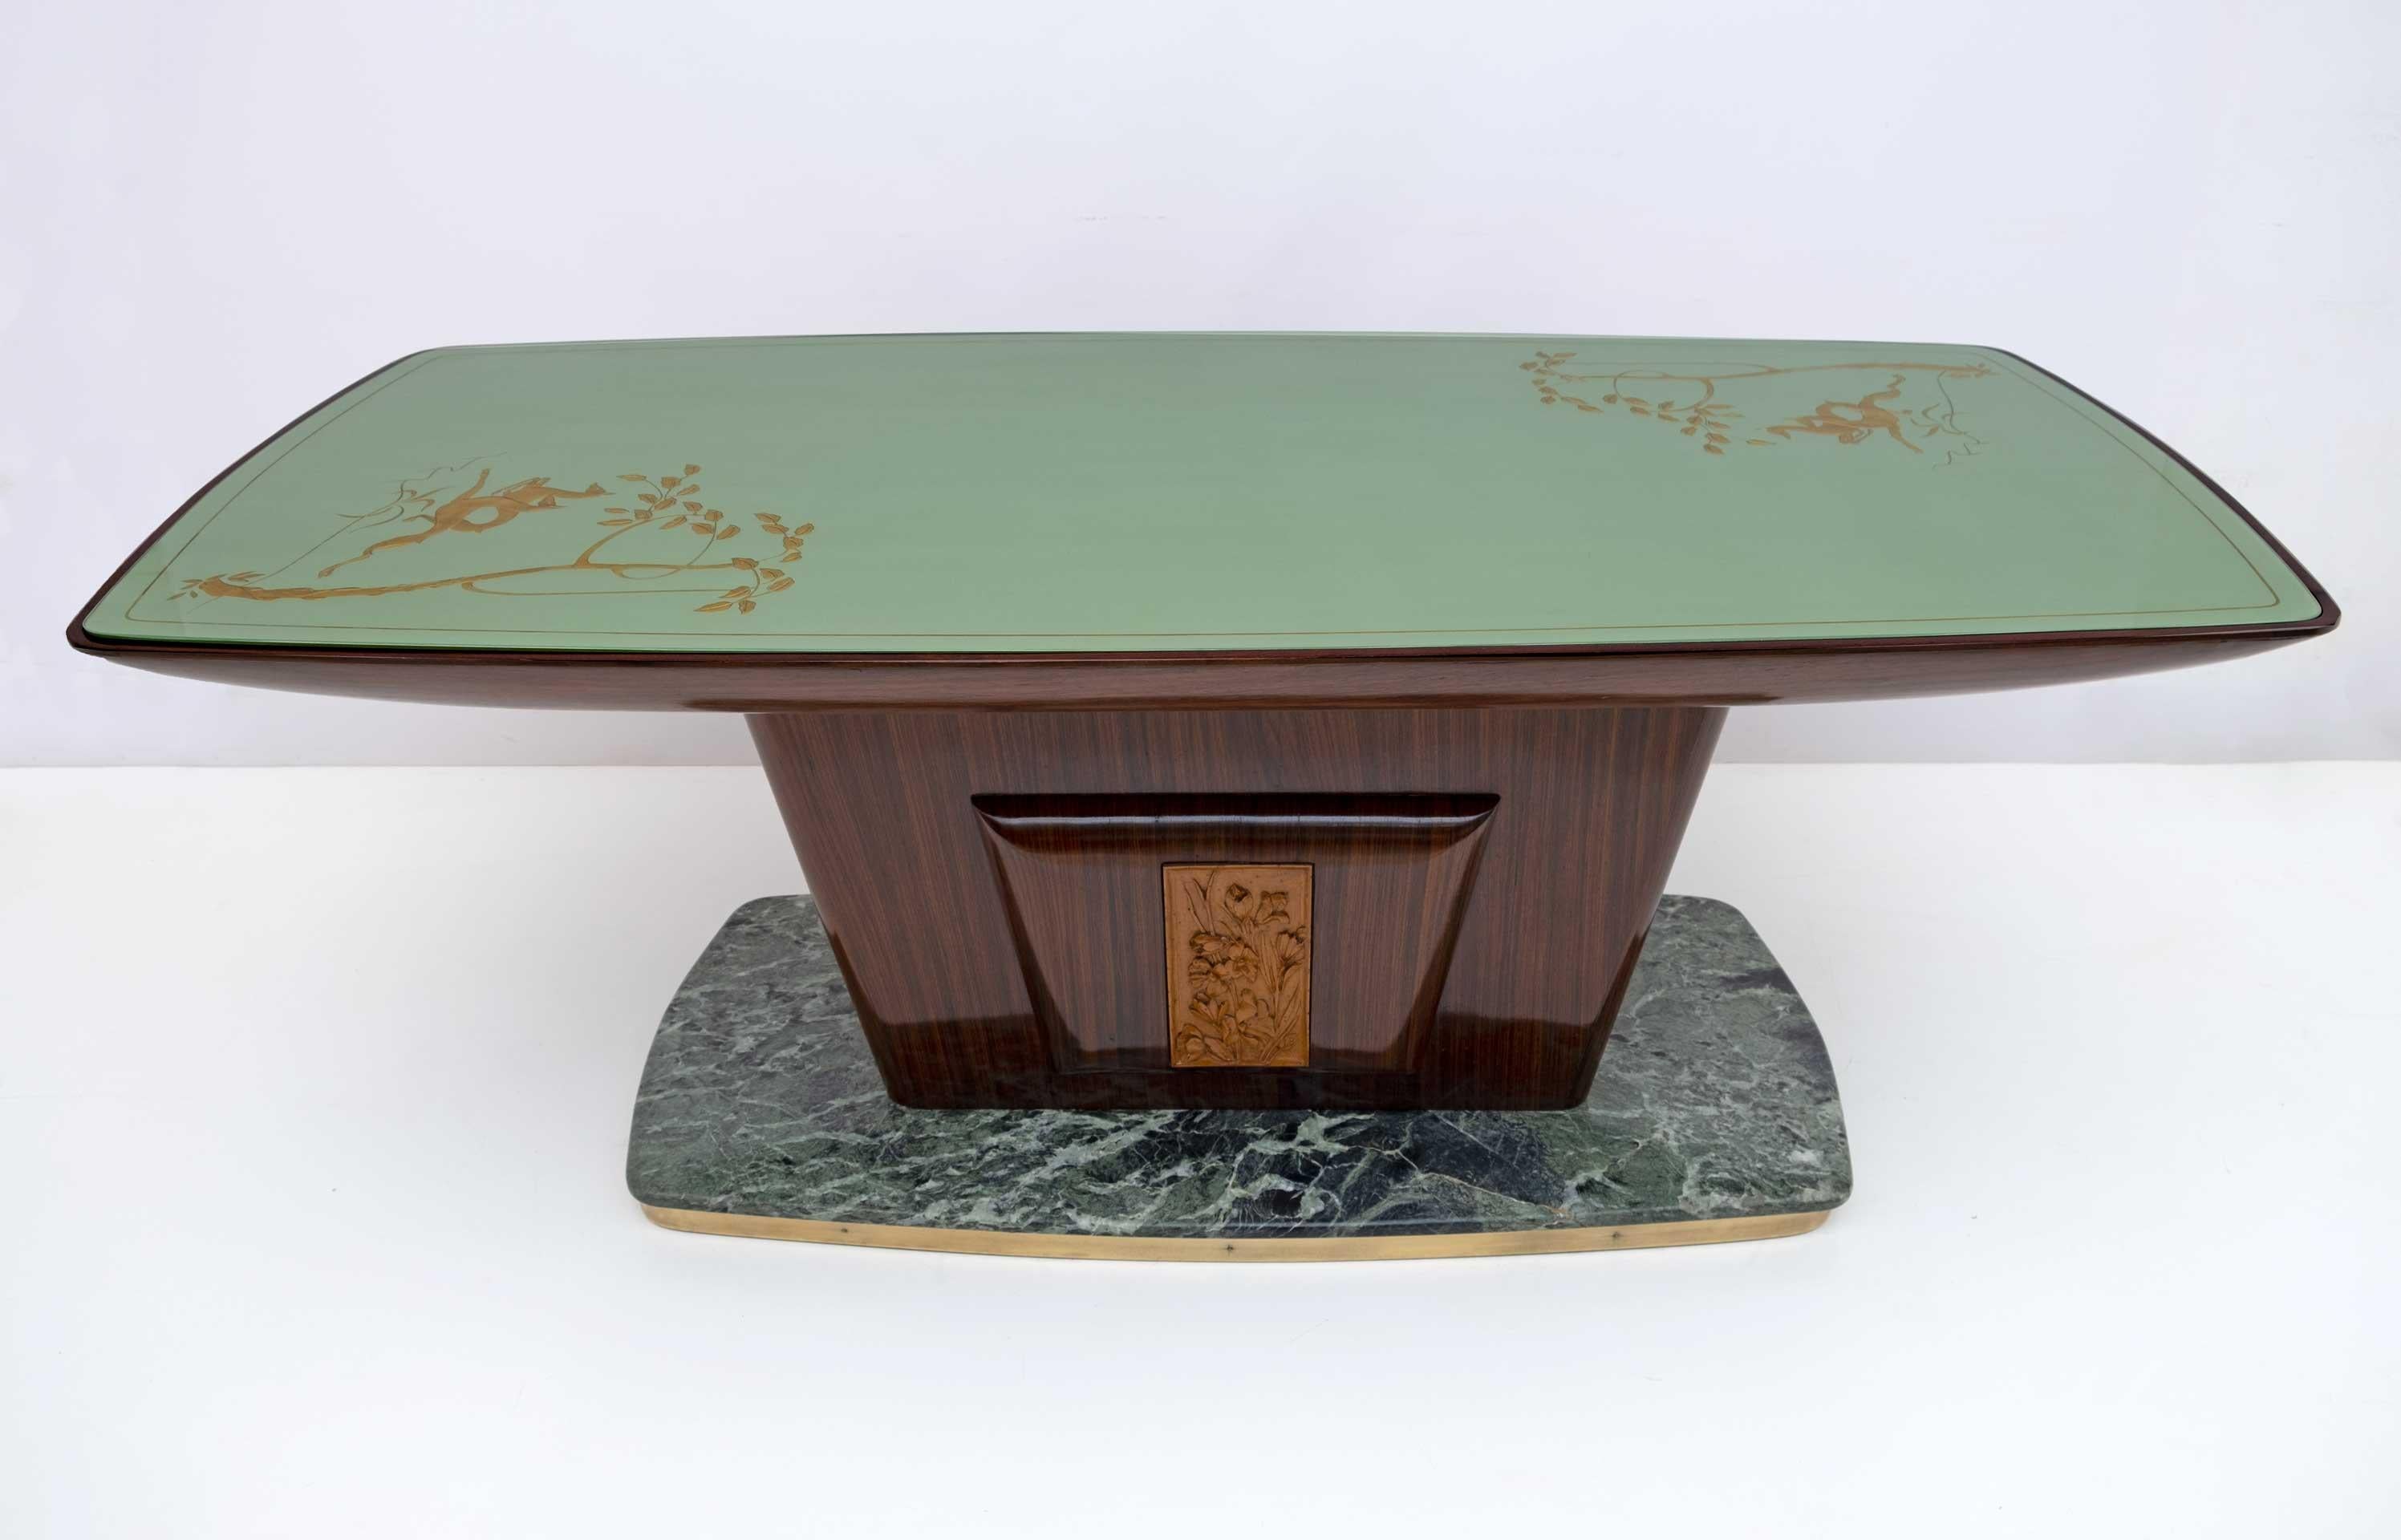 Magnifique table conçue par le célèbre designer italien de style Mid-Century Modern, Vittorio Dassi, 1950.
Le travail exceptionnel du bois est mis en valeur par le plateau en verre vert incurvé avec des décorations en feuilles d'or et les bords